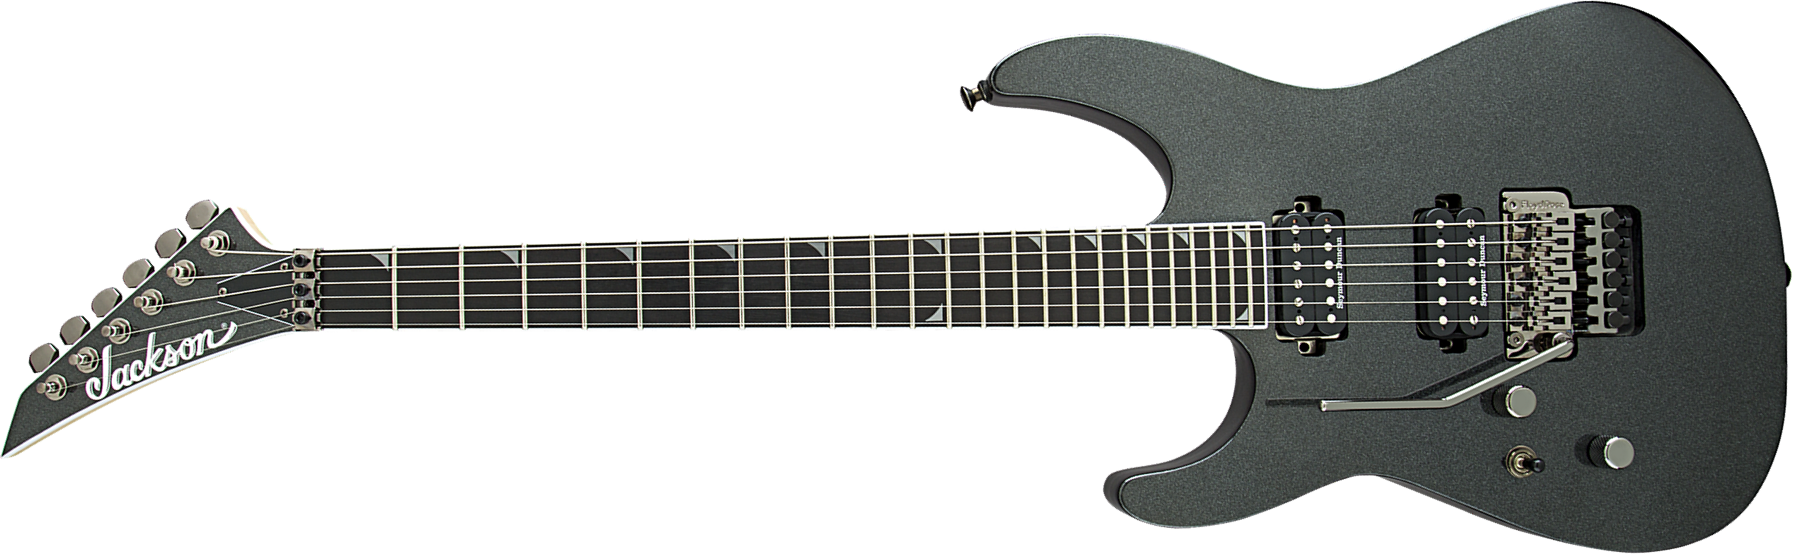 Jackson Soloist Sl2l Pro Lh Gaucher 2h Seymour Duncan Fr Eb - Metallic Black - Left-handed electric guitar - Main picture